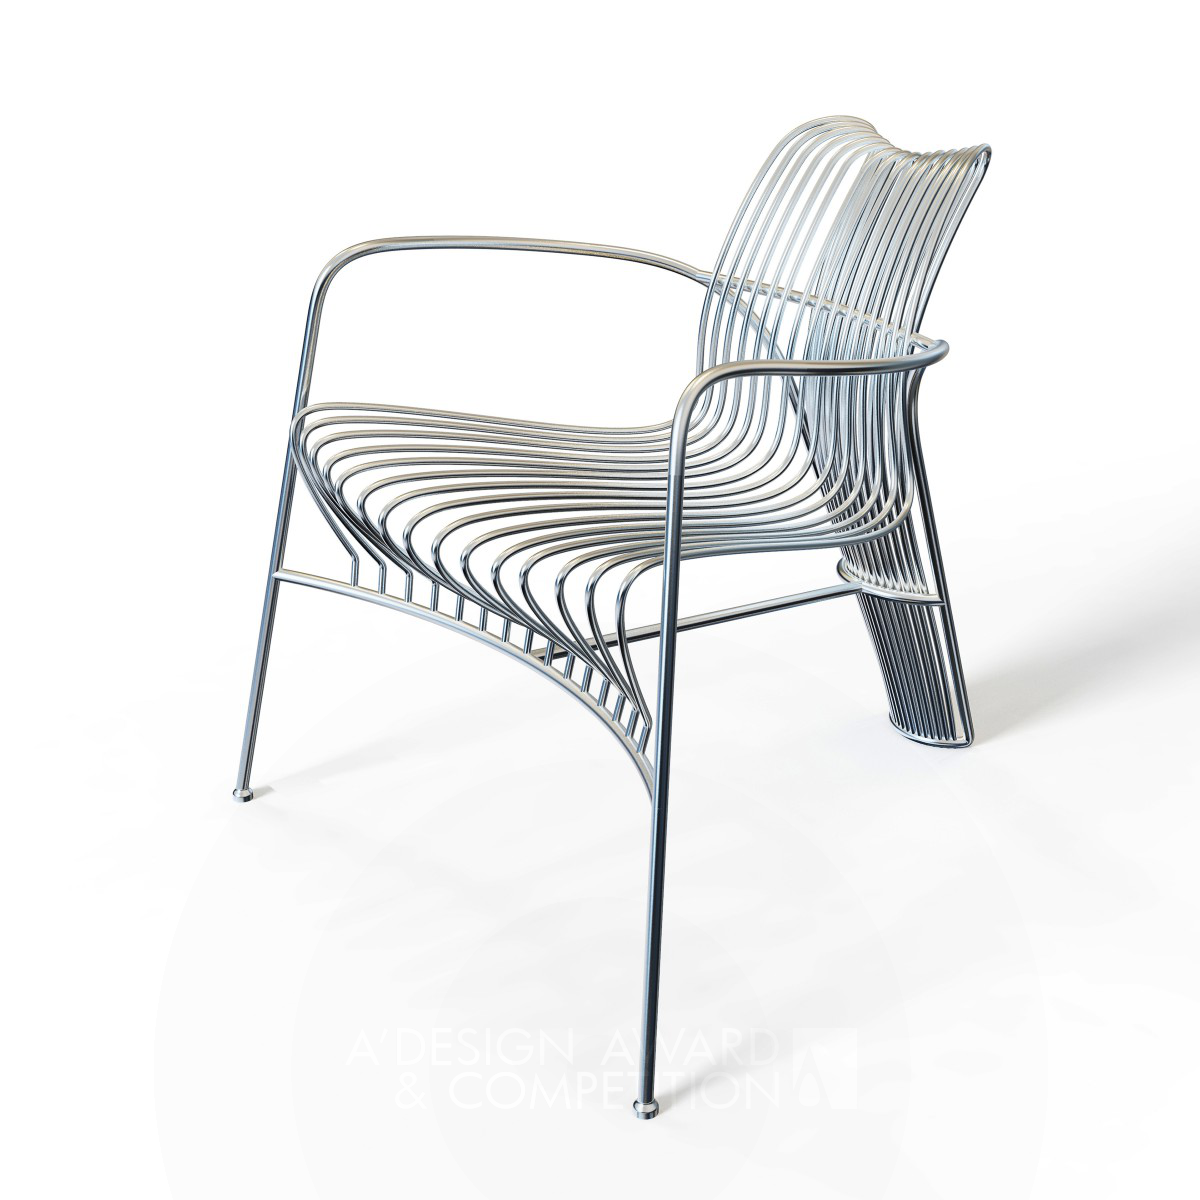 Strings Leisure Chair by Wei Jingye and Zhang Xuechen Bronze Furniture Design Award Winner 2022 